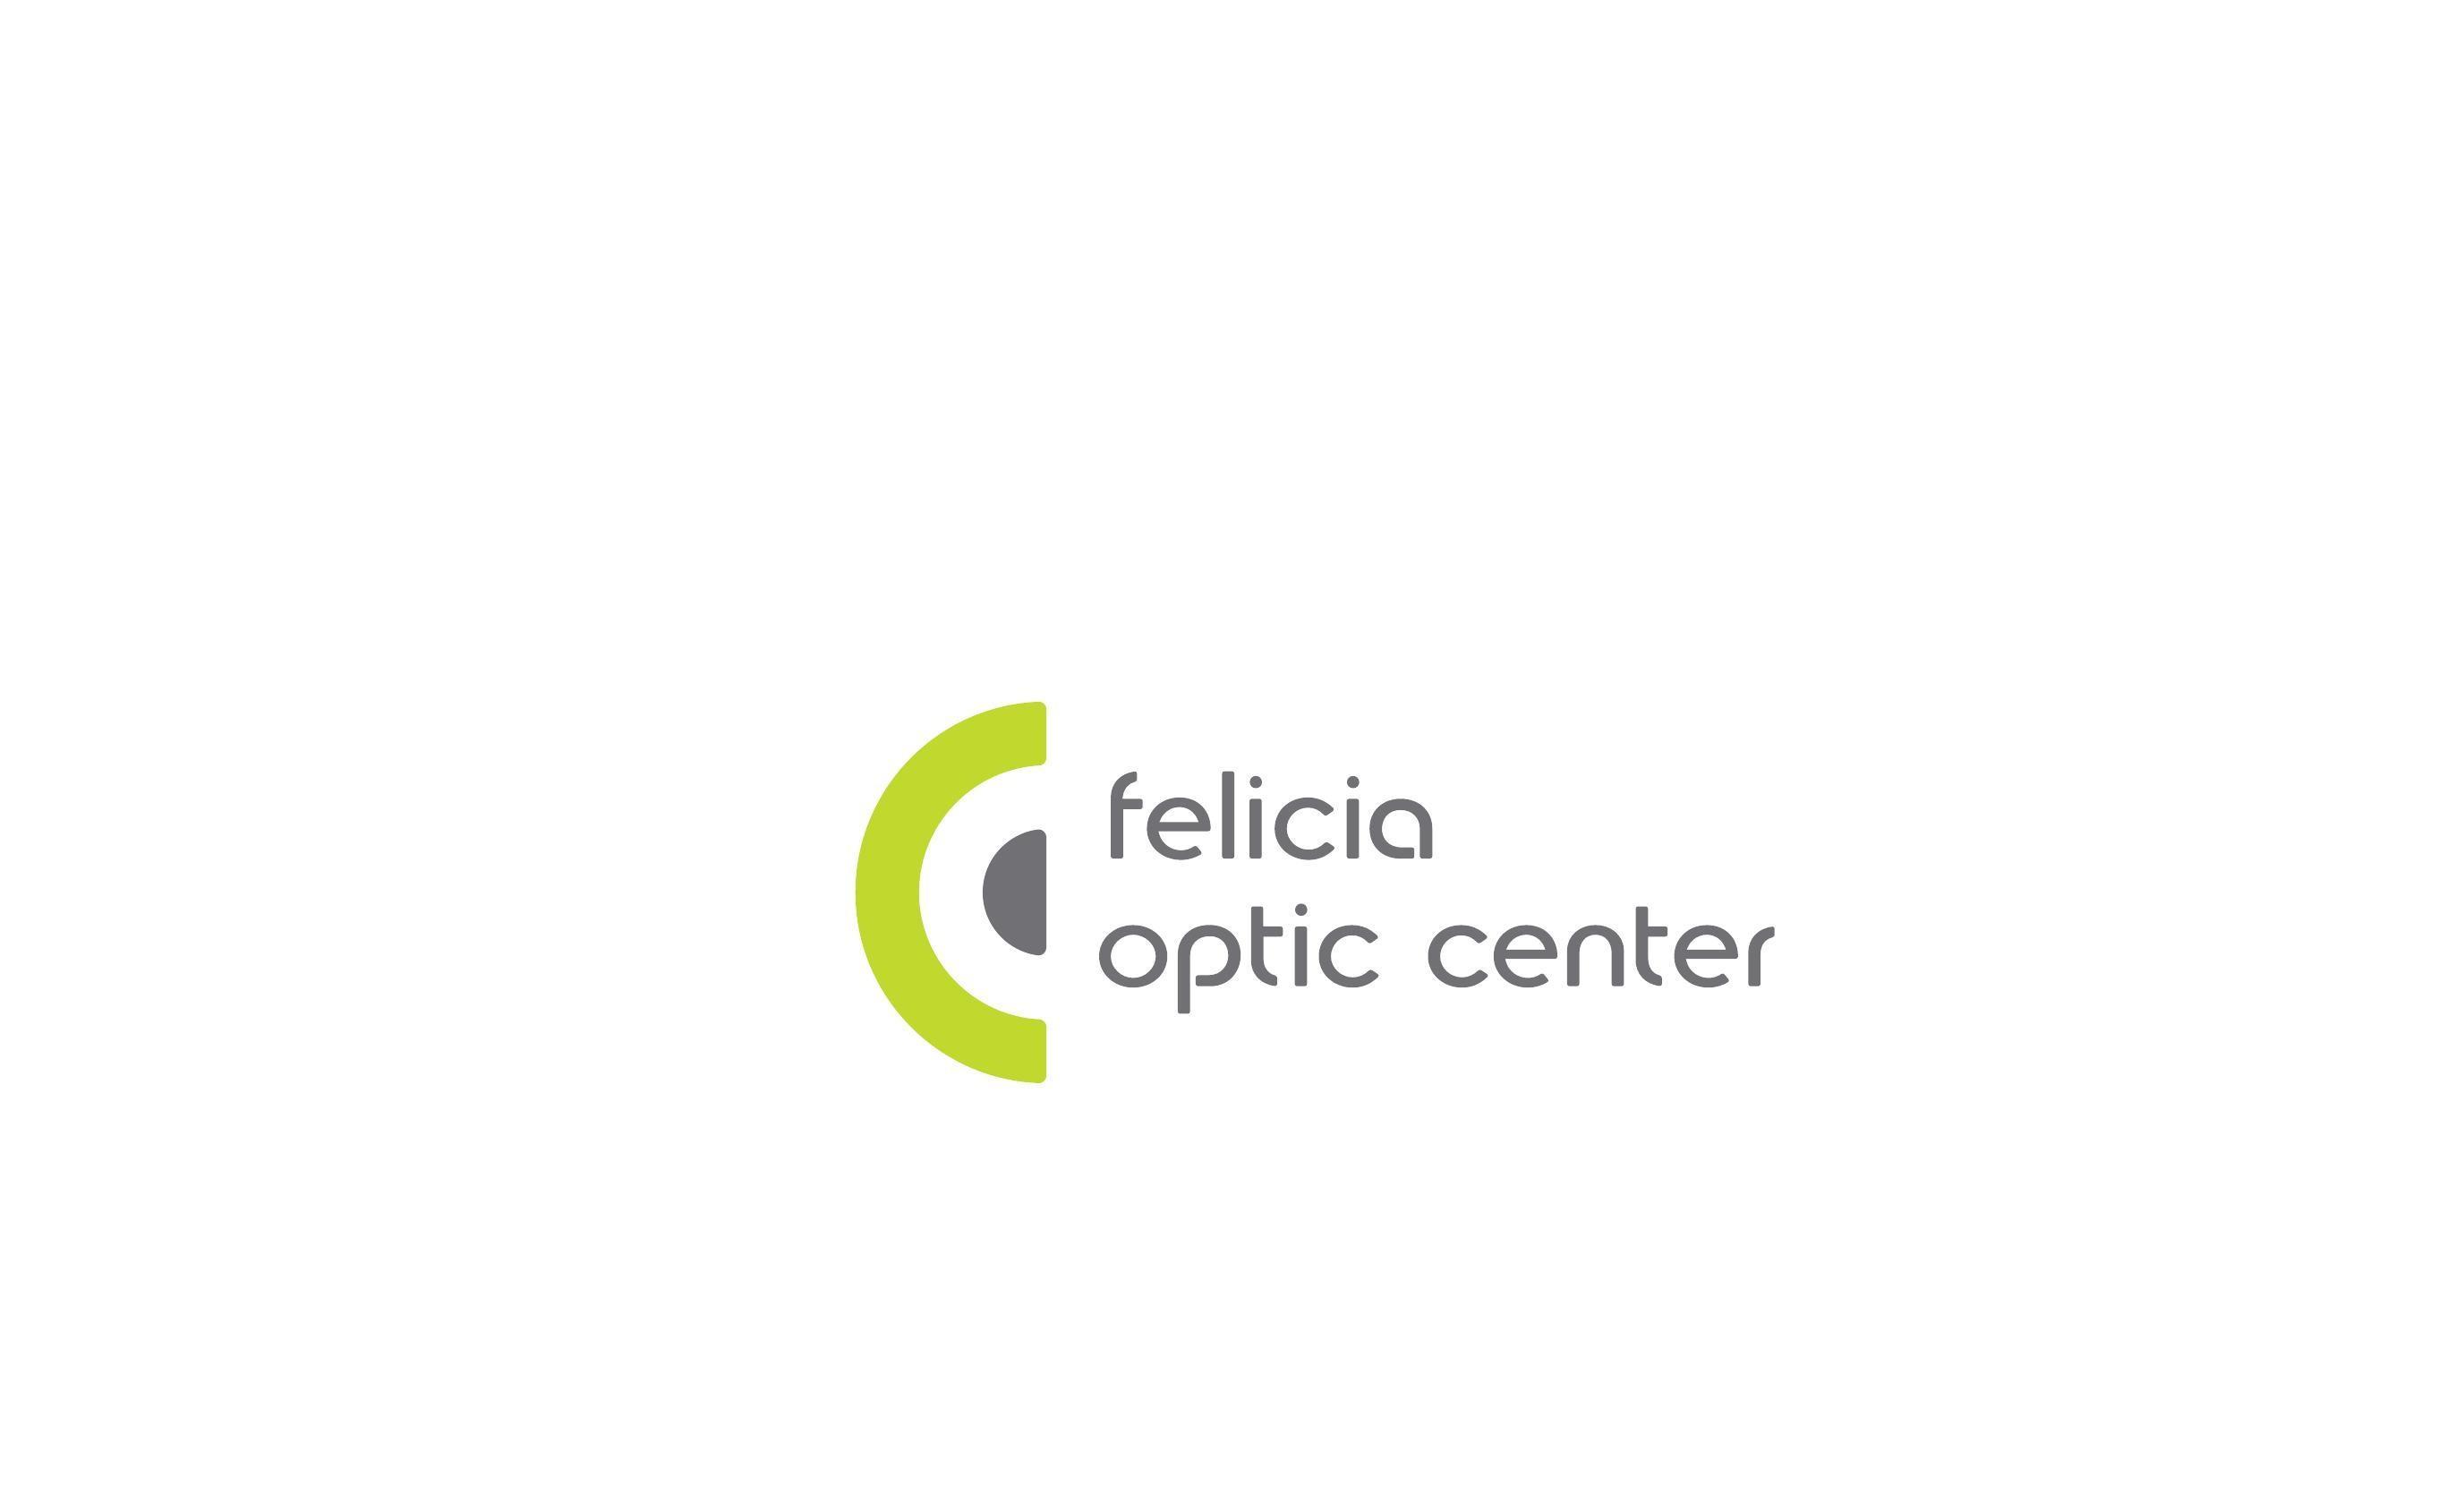 FELICIA OPTIC CENTER